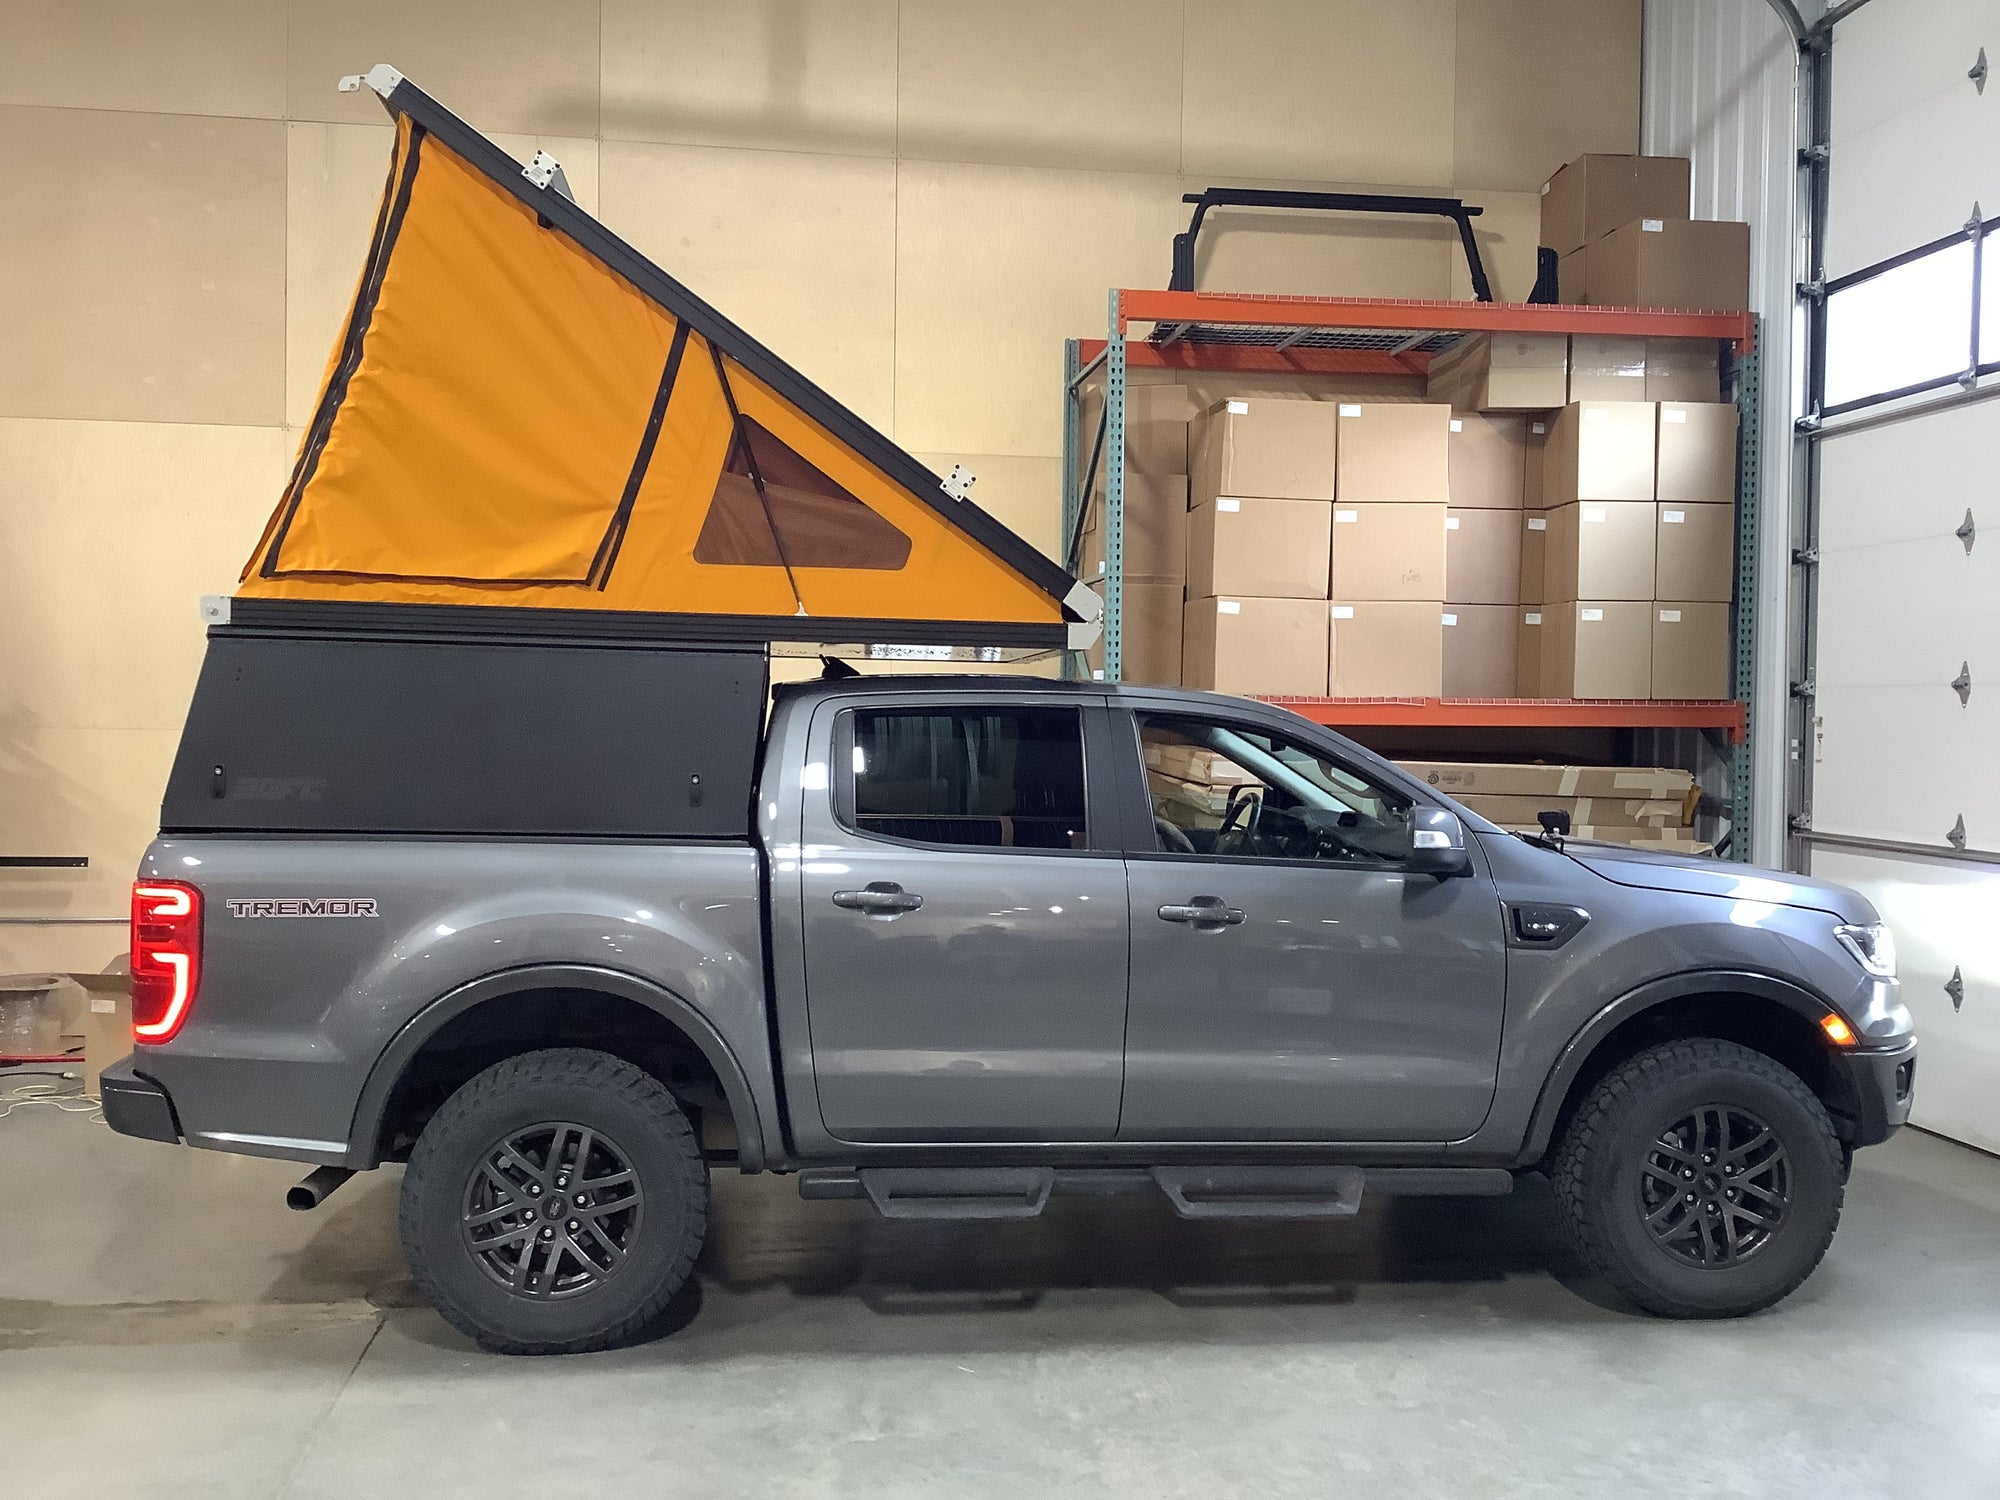 2021 Ford Ranger Camper - Build #3520